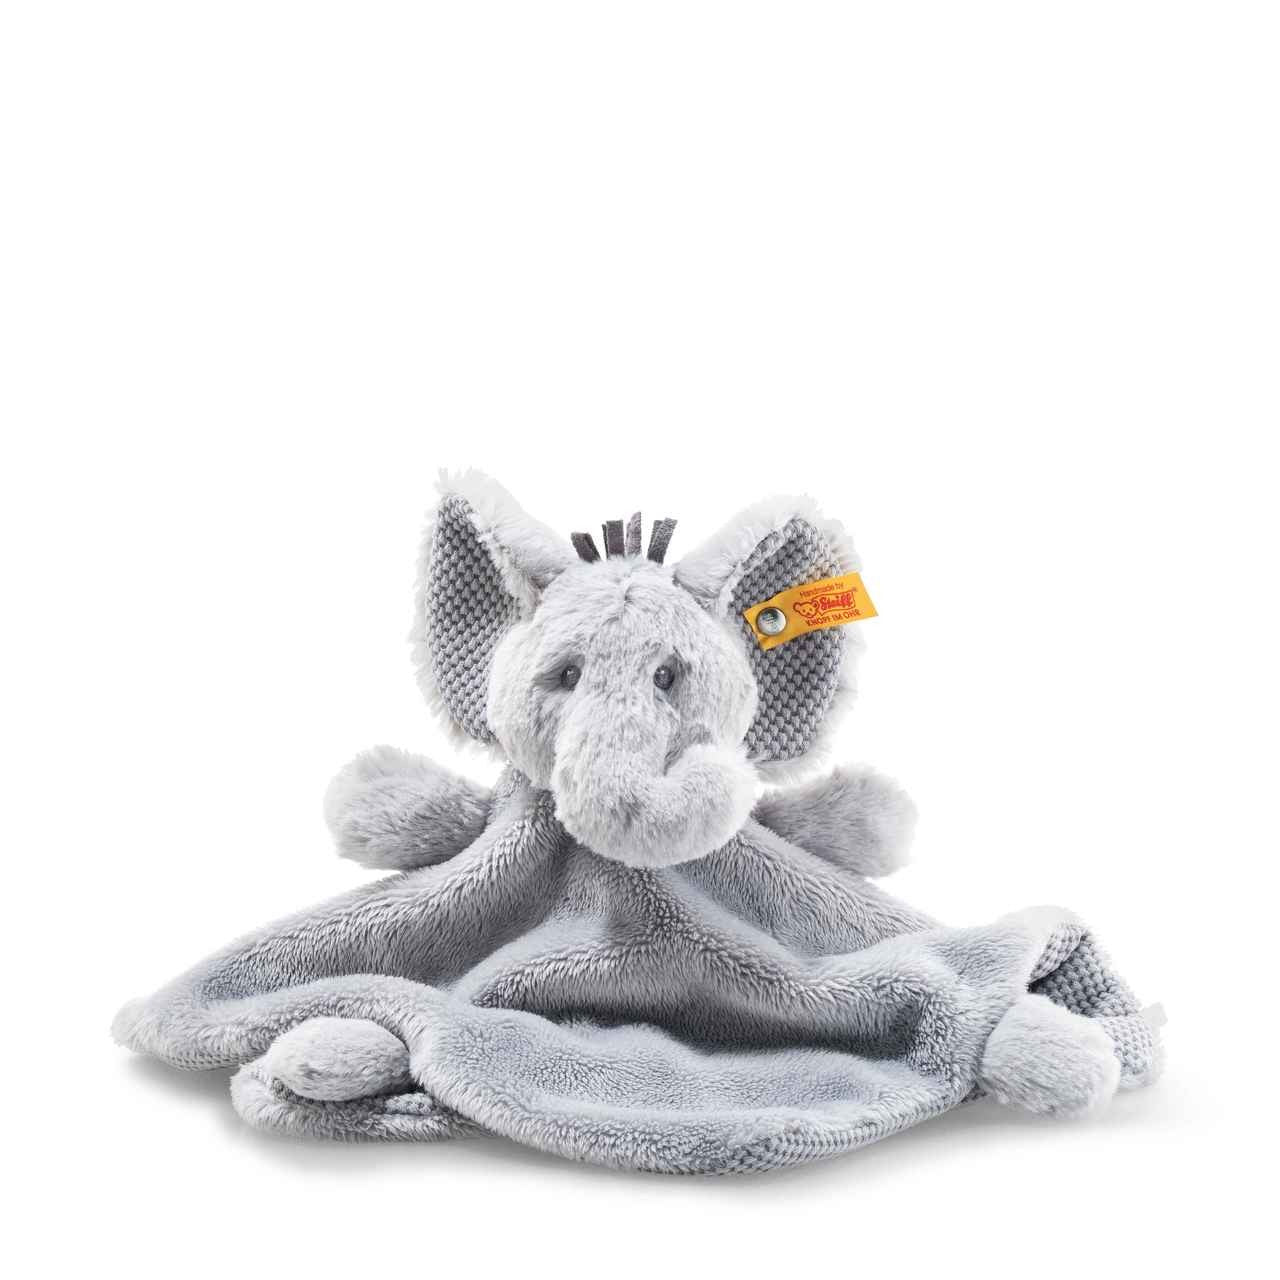 Stieff - Soft Cuddly Friends -Ellie Elephant Comforter